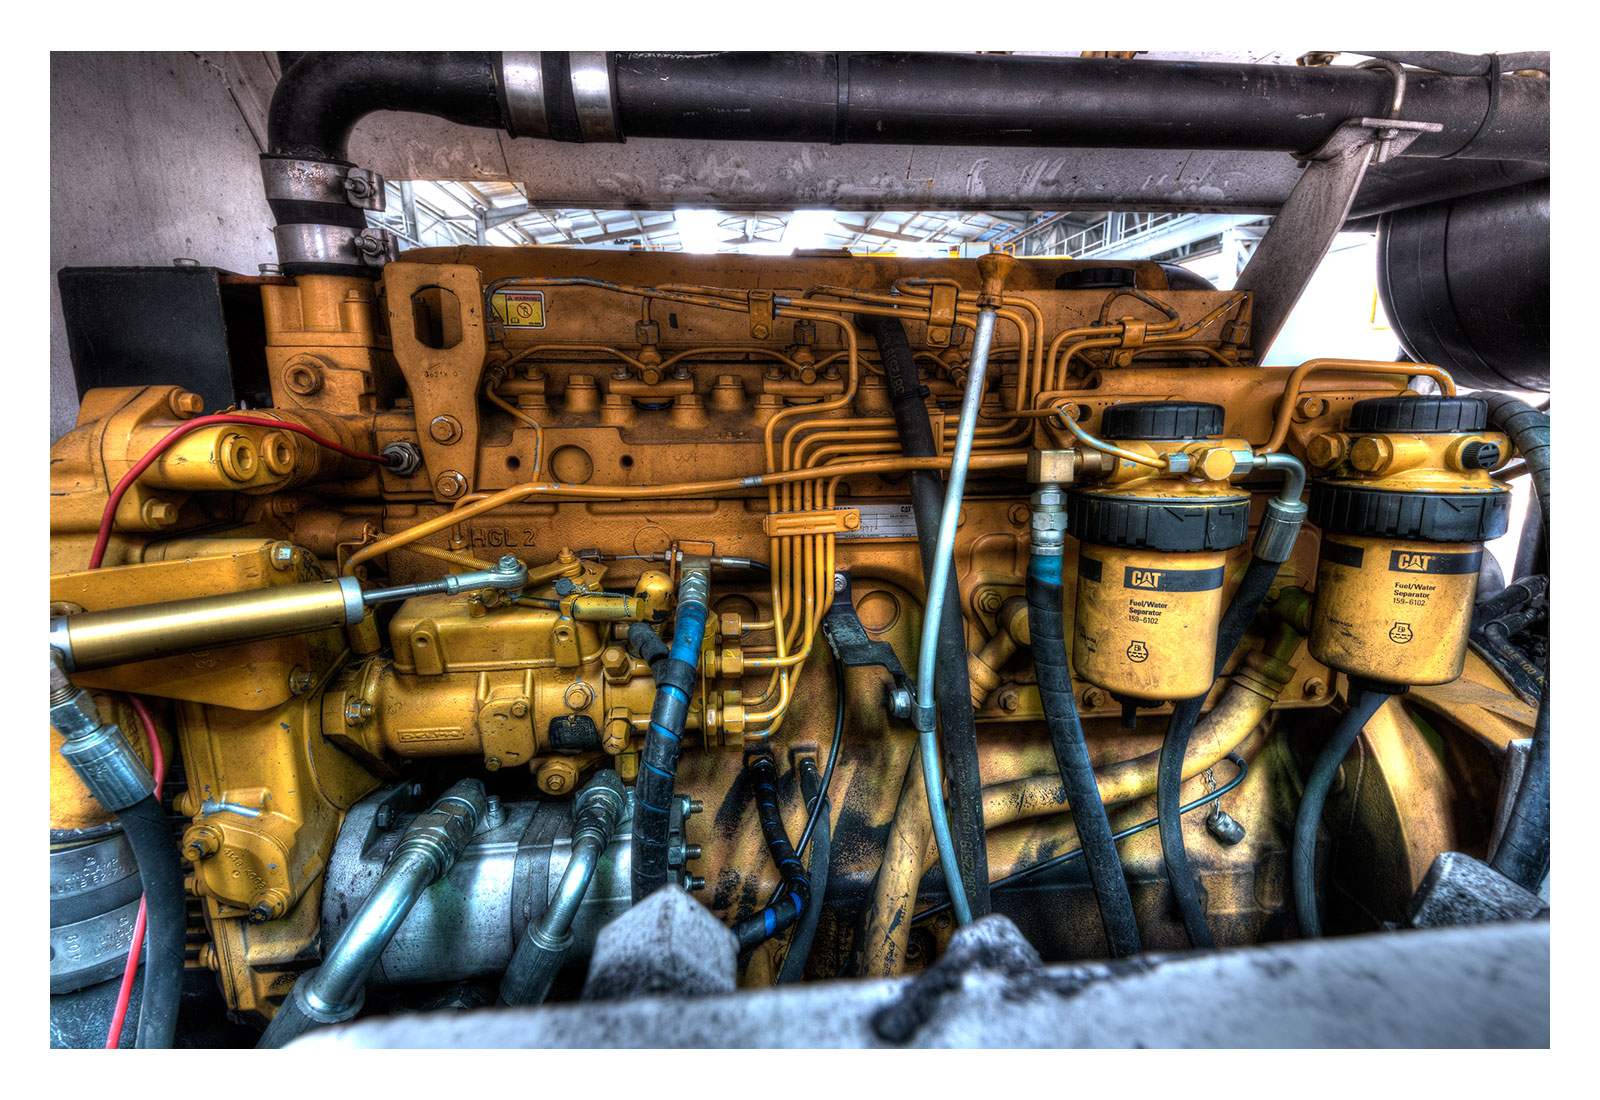 Engine by Oliver Karstel